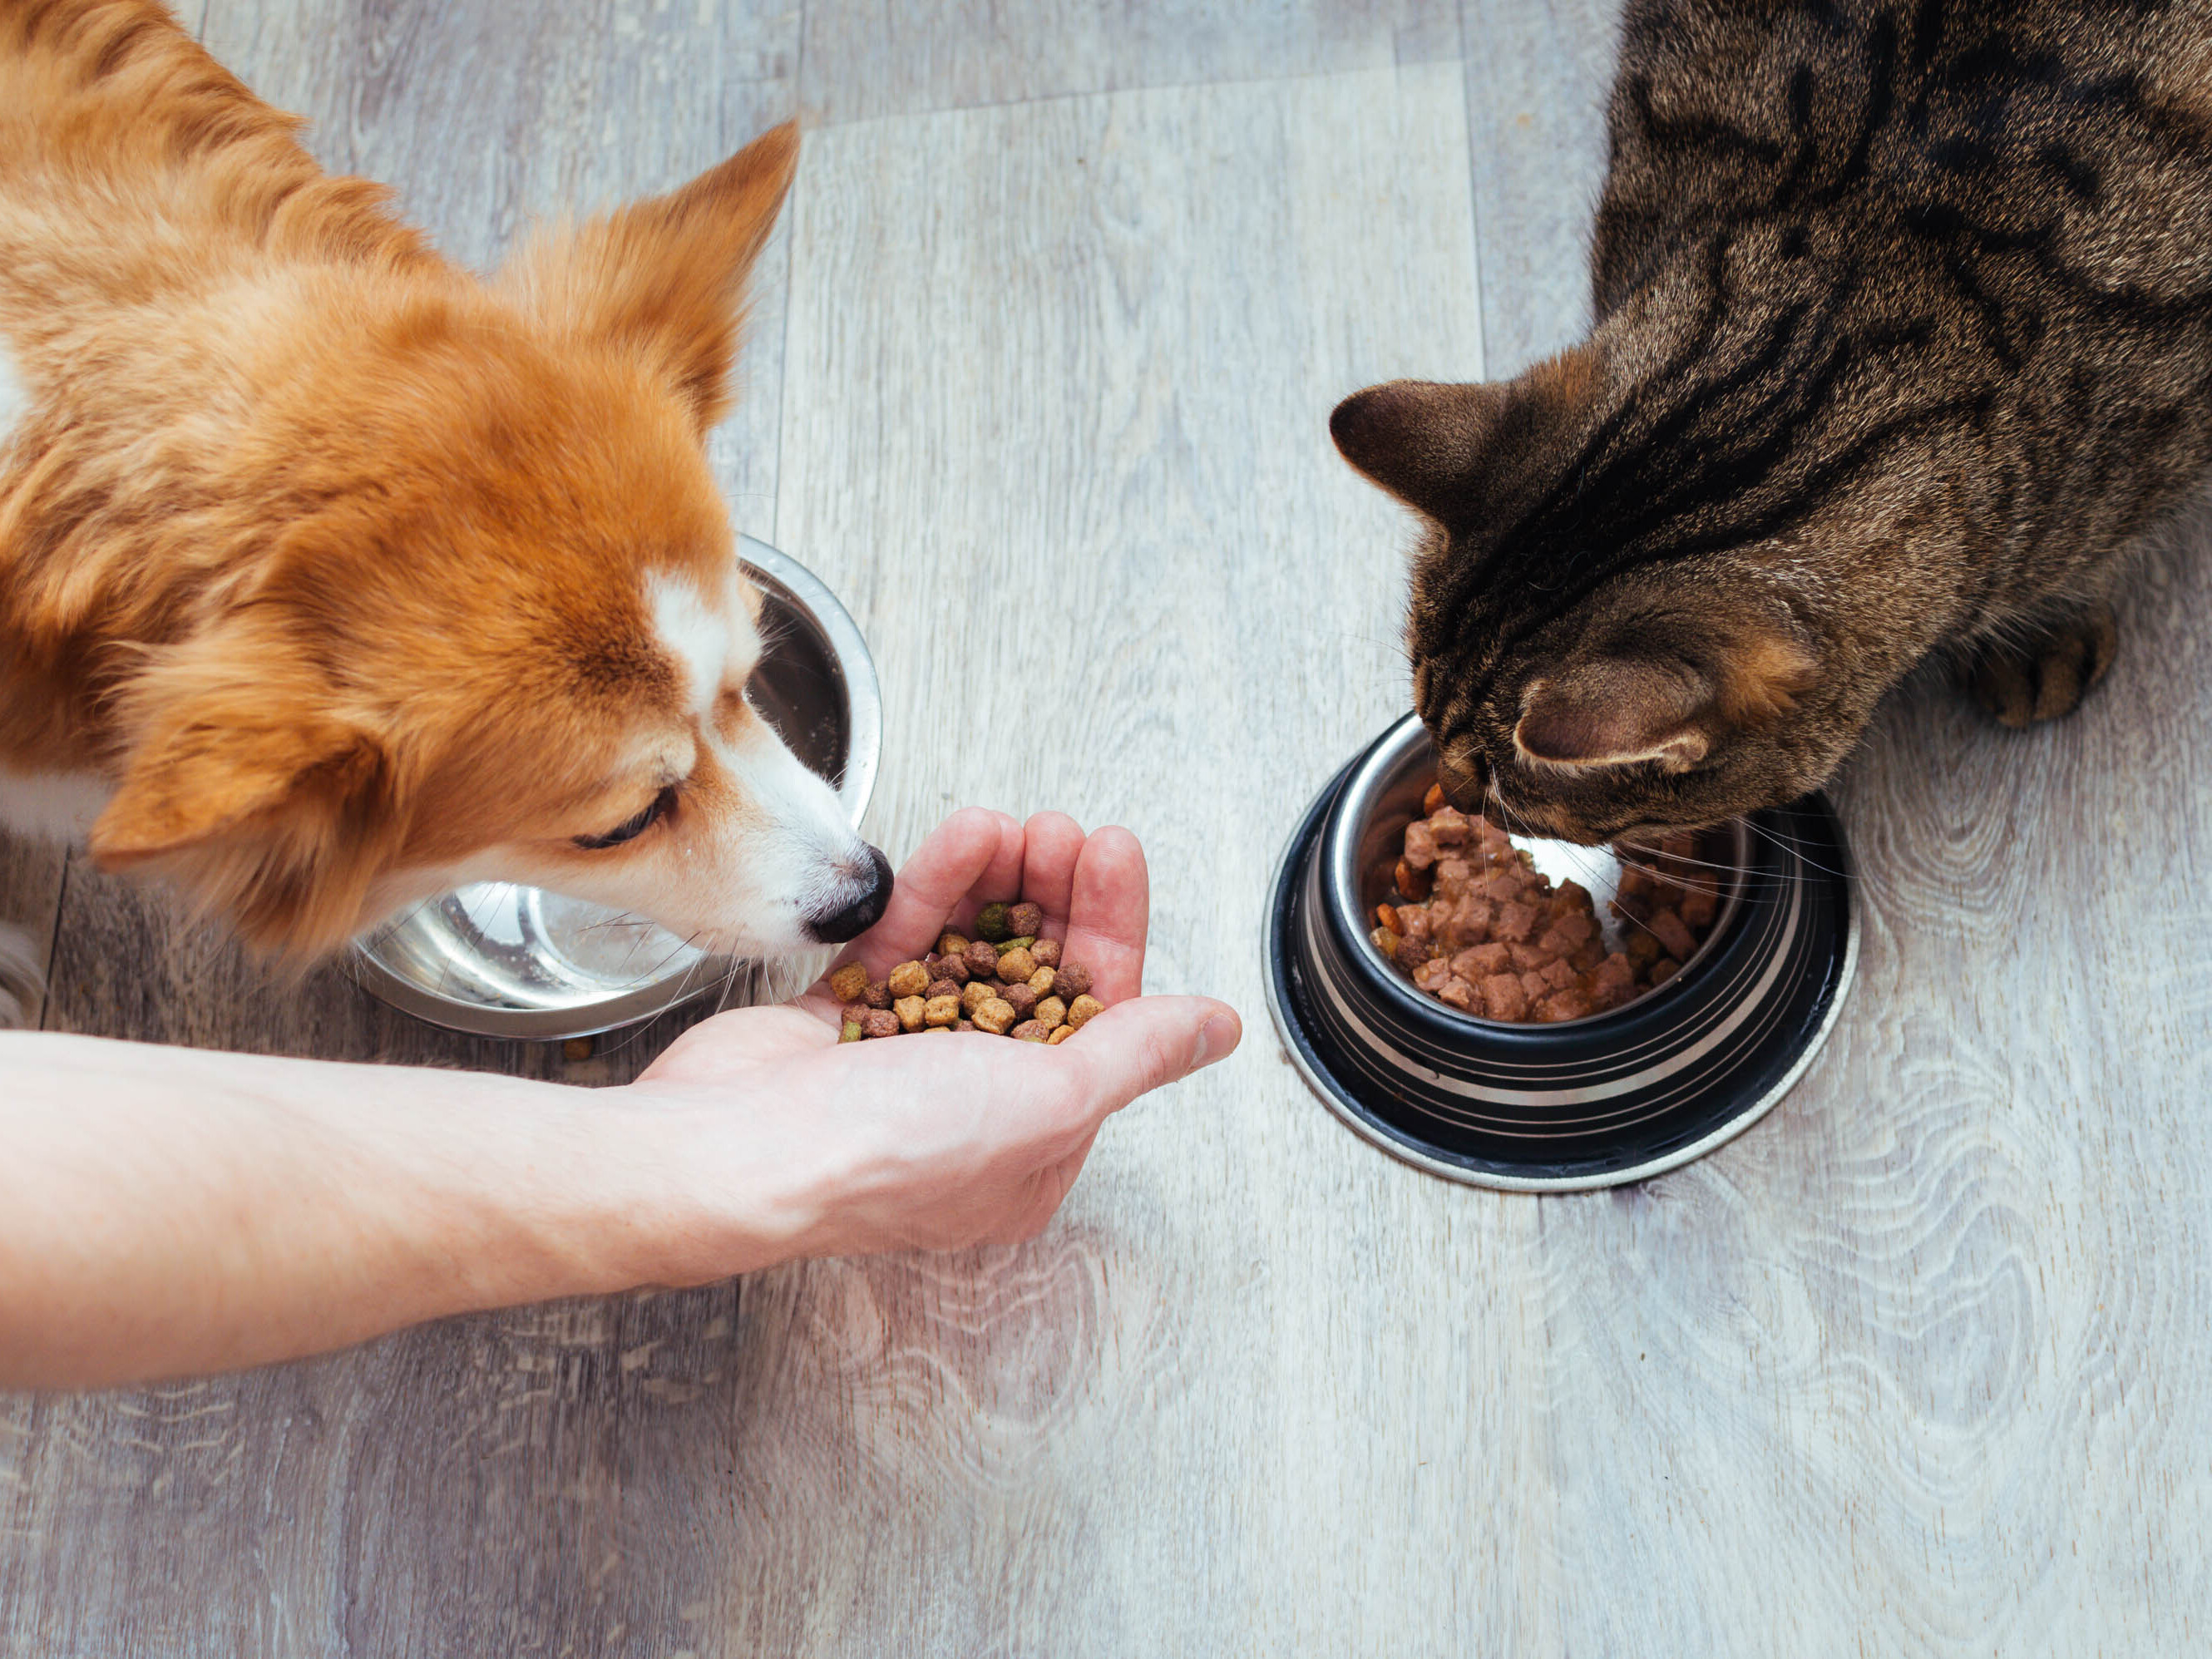 Katze und Hund essen zusammen